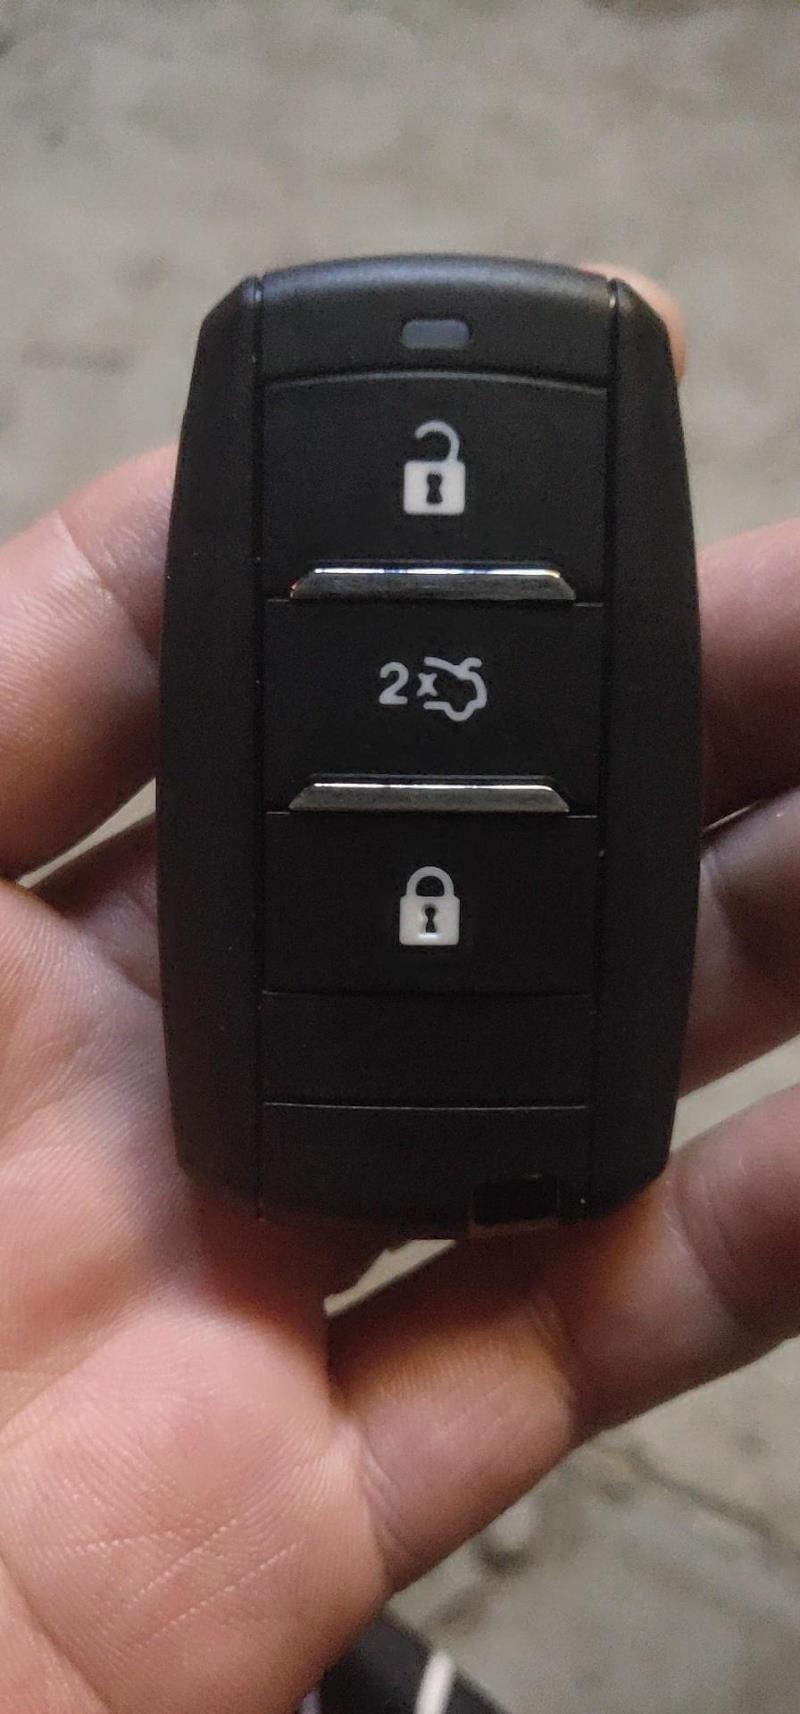 长安cs75，问个事，的是18款手动精智怎么才能在遥控钥匙上做一键升窗功能，去4s店激活，还是在淘宝上买个OBD一键升窗器，不过有人说买这玩意对车有安全隐患，所以